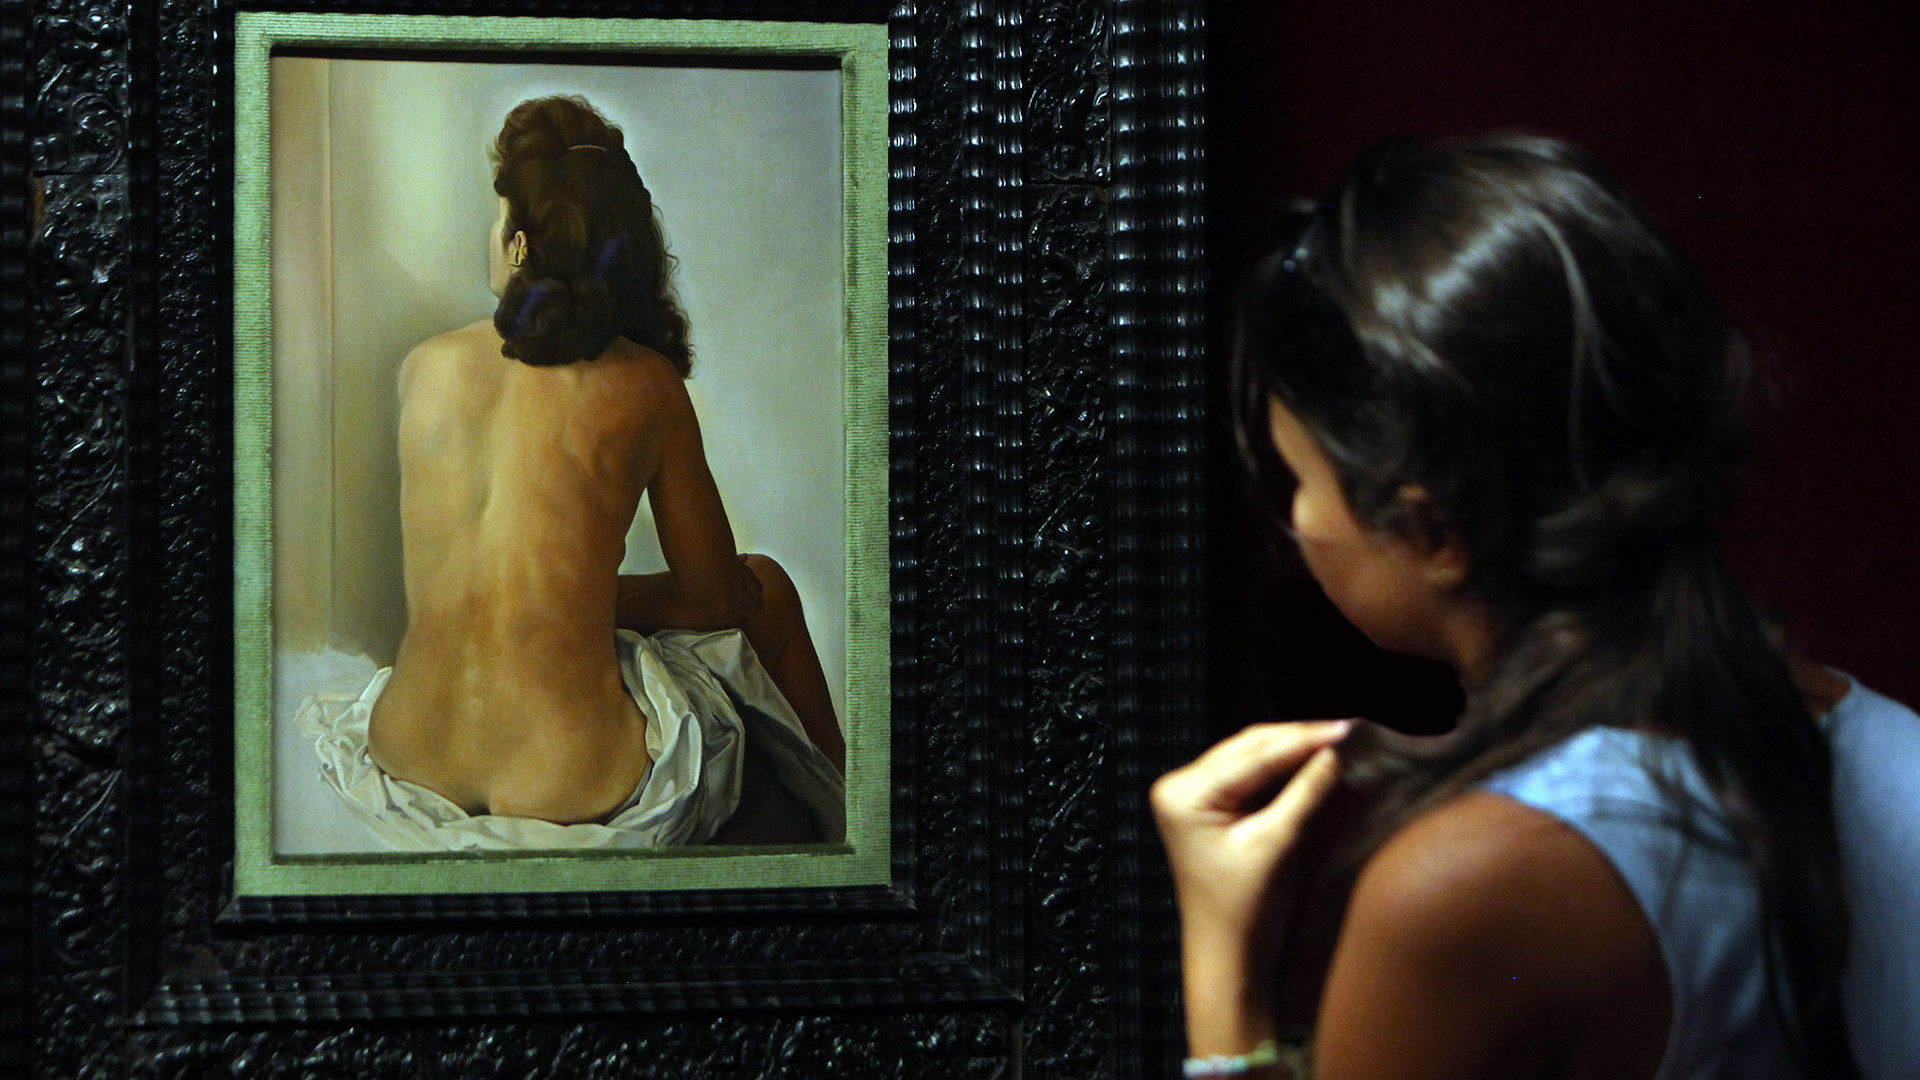 Gala de dos, regardant un miroir invisible, par Salvadore Dali, 1960